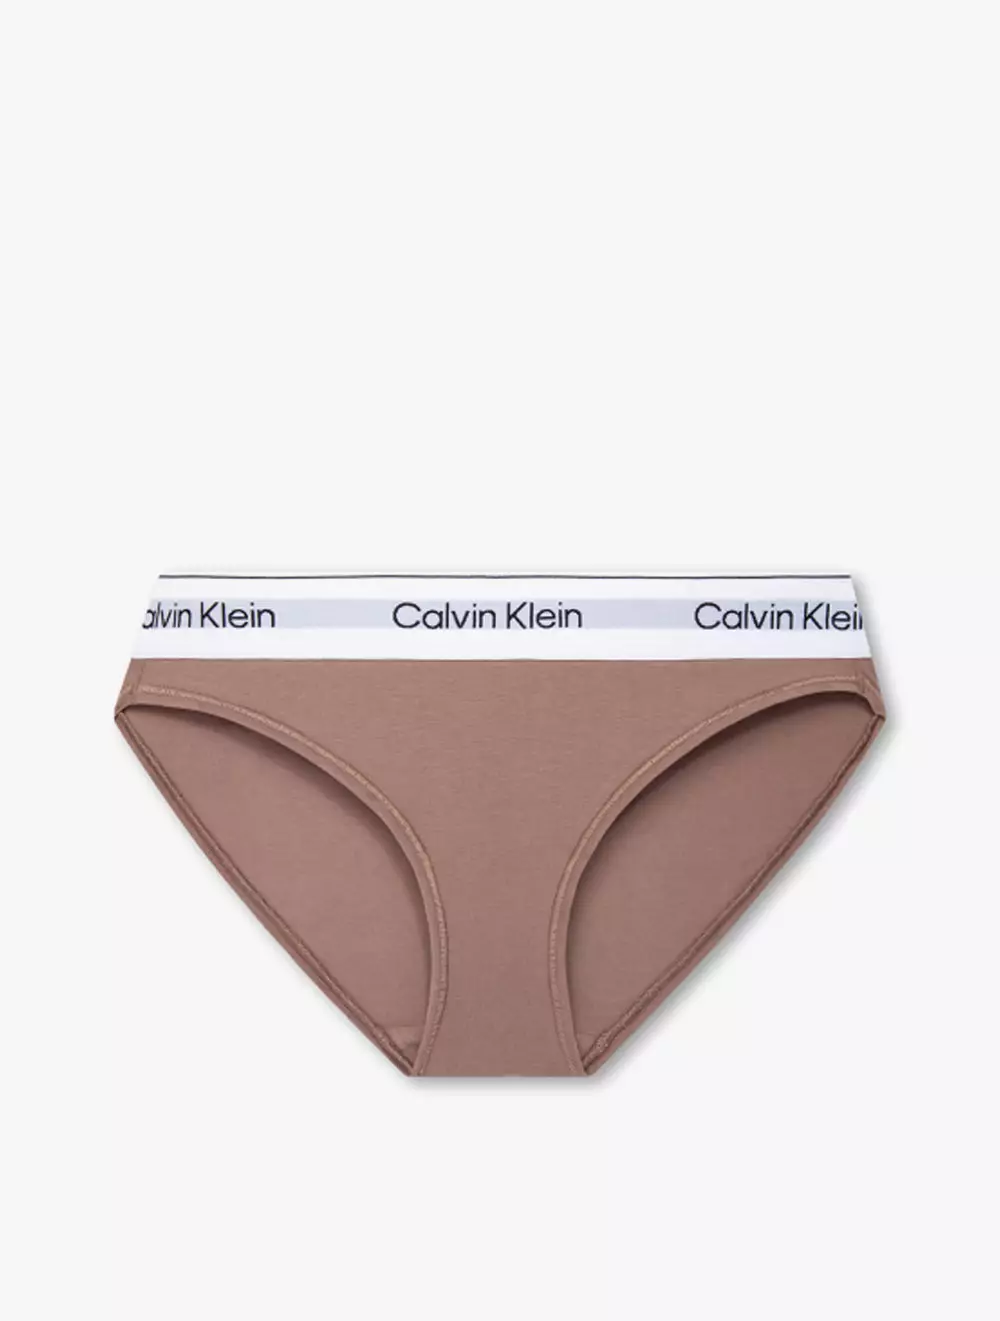 Calvin Klein Underwear Modern Cotton Naturals Bikini